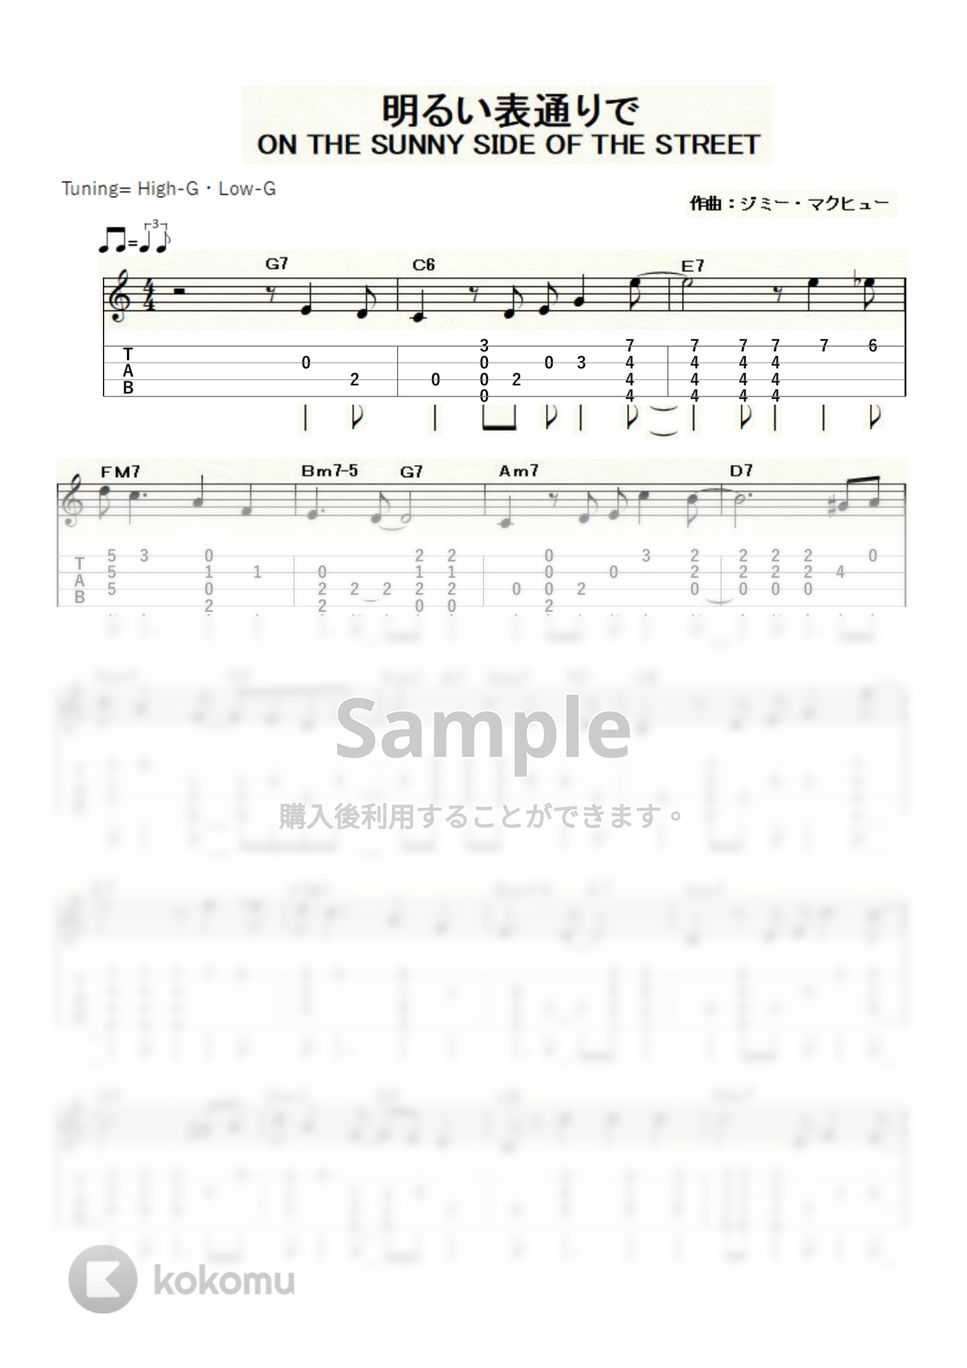 ルイ・アームストロング - ON THE SUNNY SIDE OF THE STREET (ｳｸﾚﾚｿﾛ / High-G・Low-G / 中級) by ukulelepapa